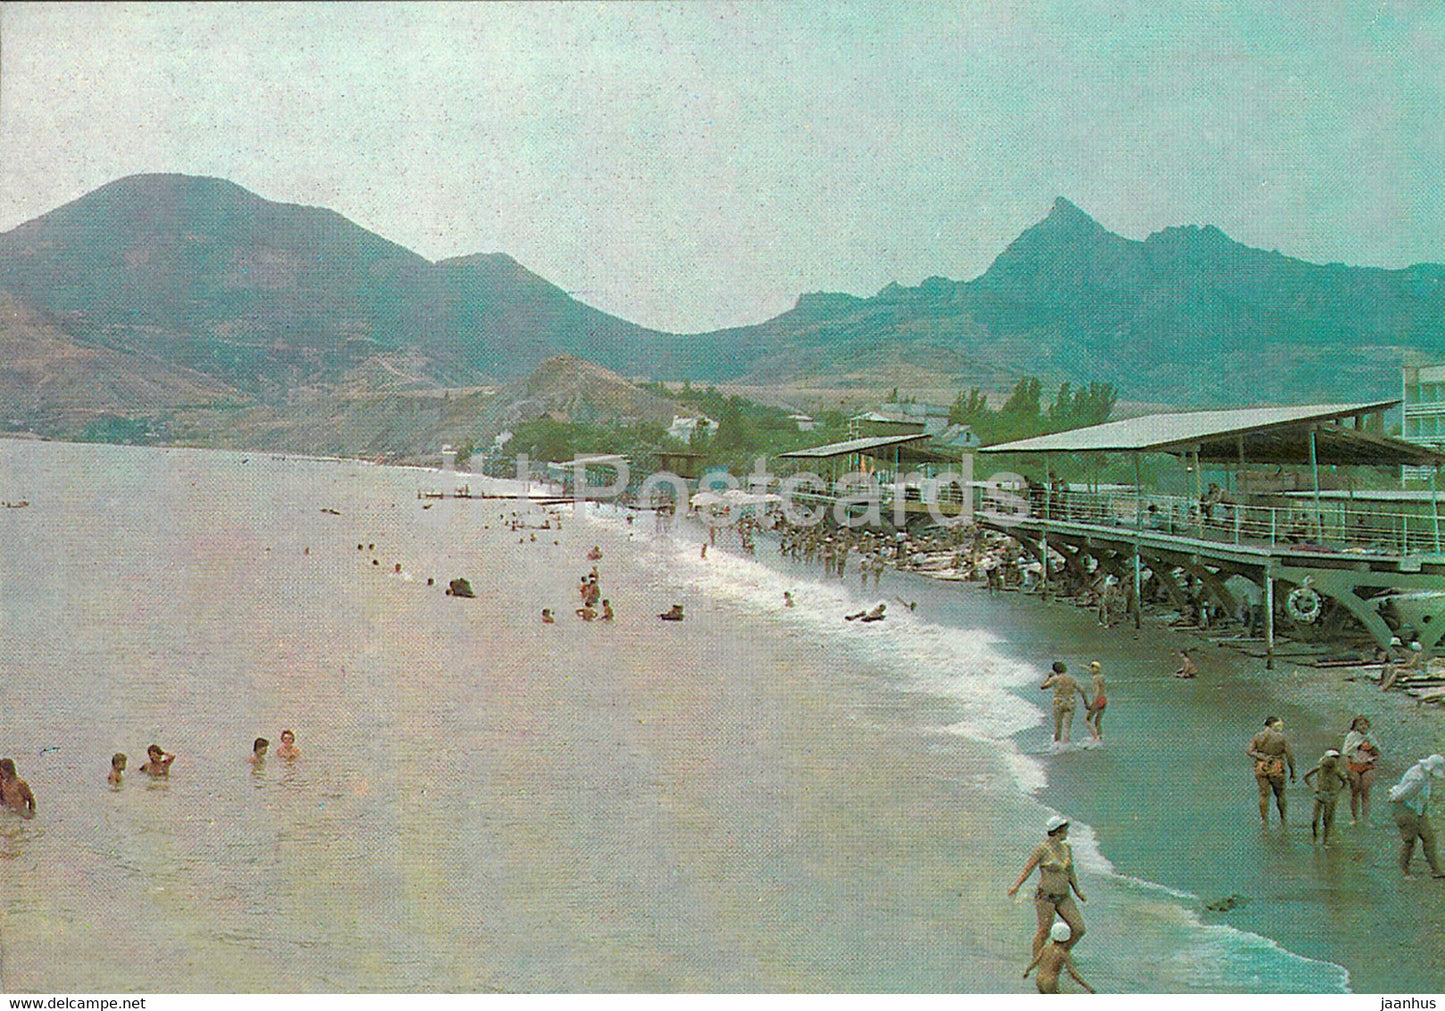 Crimea - Planerskoe beach - postal stationery - 1981 - Ukraine USSR - unused - JH Postcards